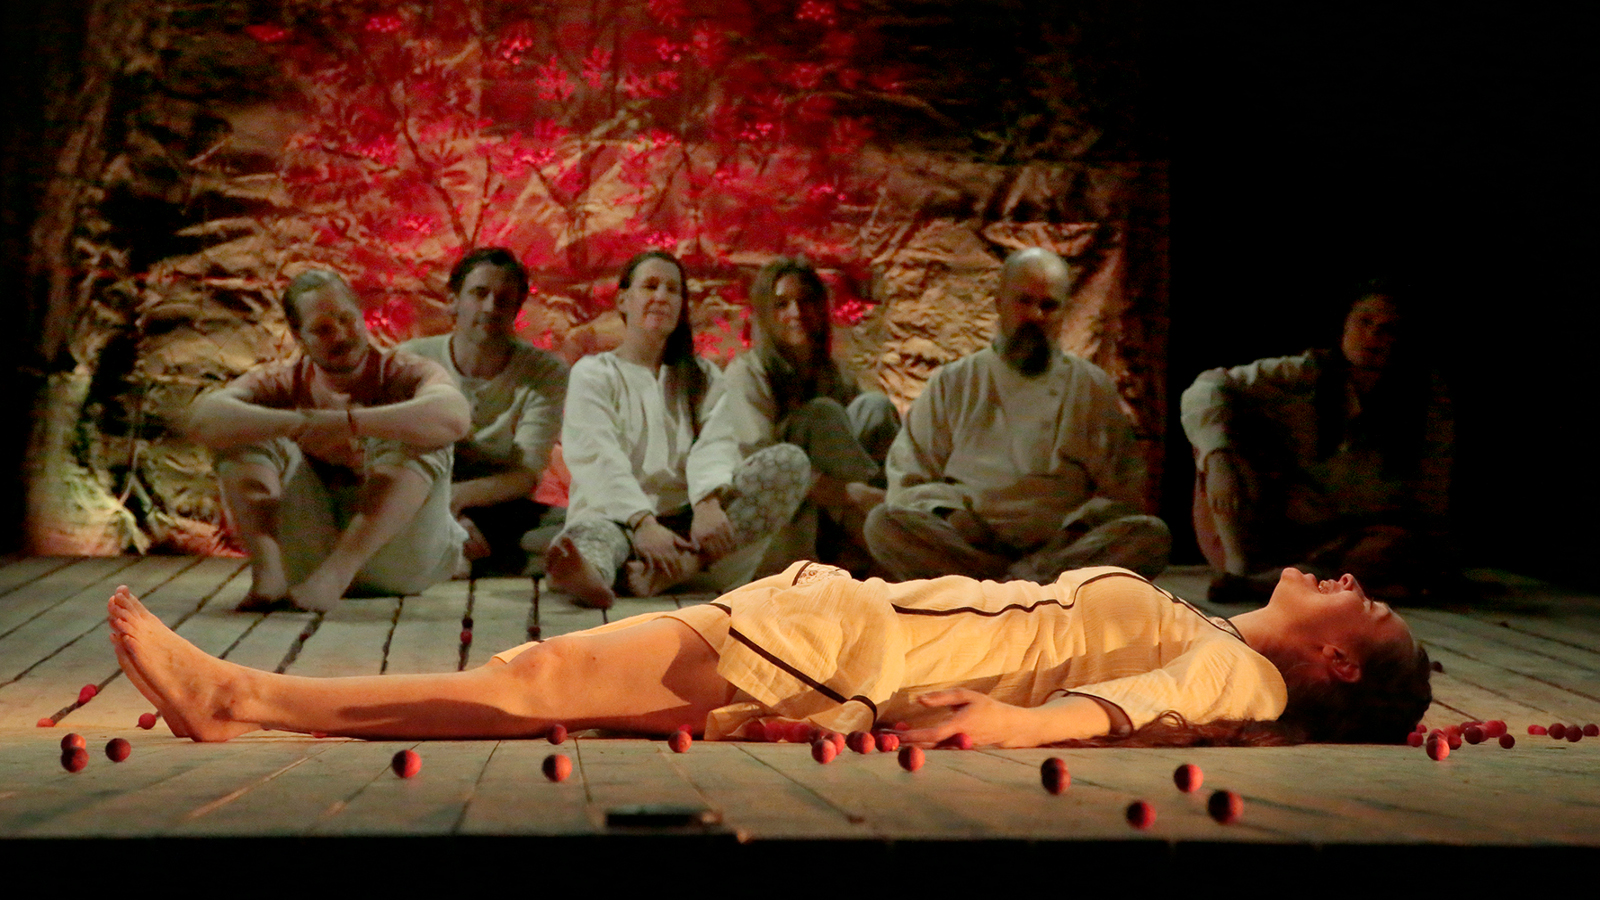 Kuvassa on taustalla kuusi näyttelijää vaaleissa säkkikankaisissa puvuissa ja edessä makaa Vera Veiskola vaaleassa puvussa.